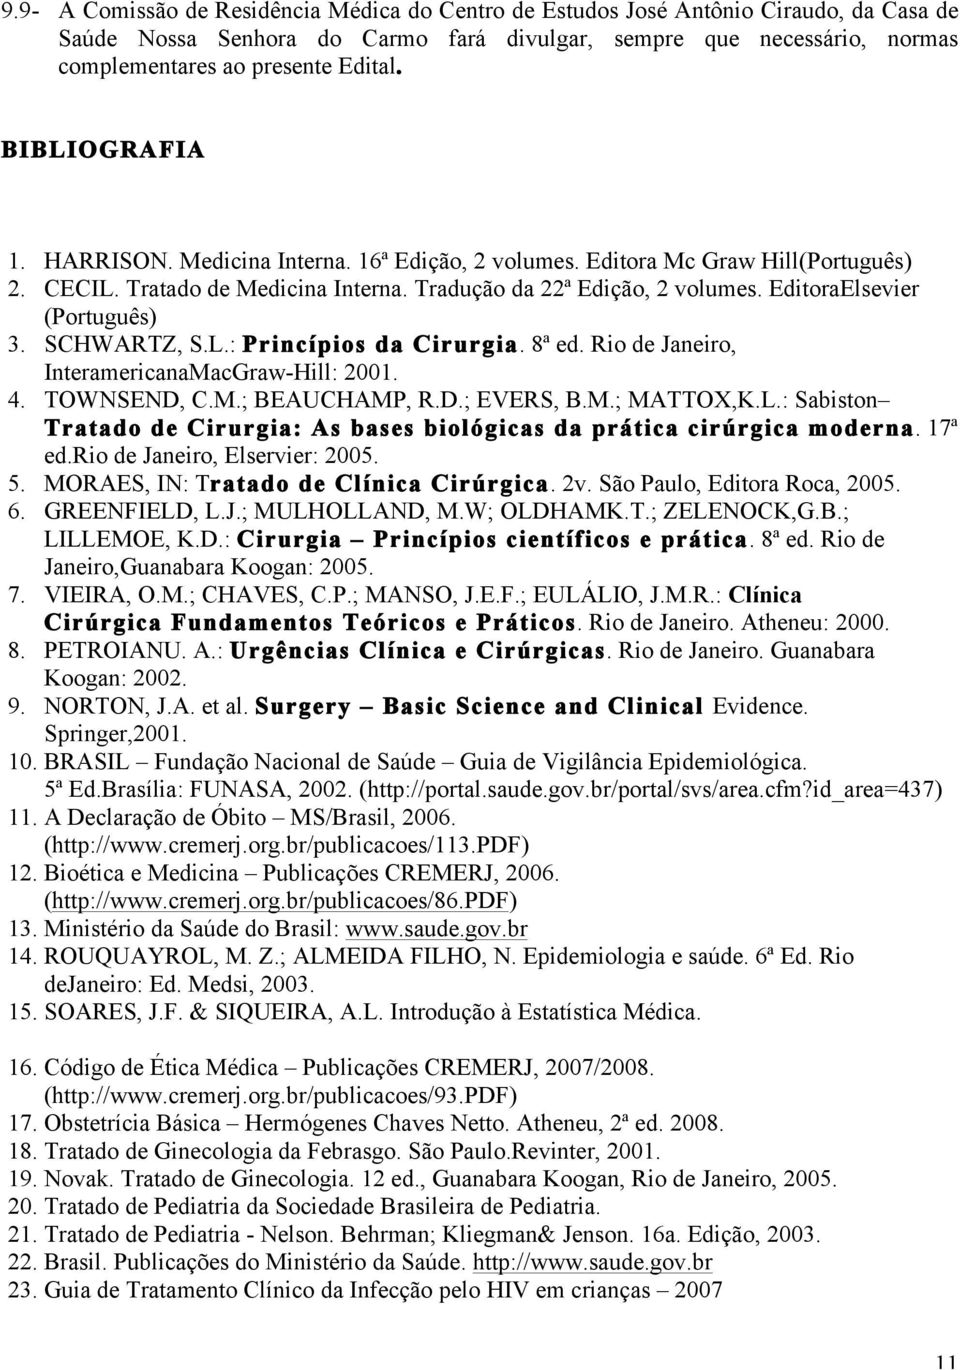 EditoraElsevier (Português) 3. SCHWARTZ, S.L.: Princípios da Cirurgia. 8ª ed. Rio de Janeiro, InteramericanaMacGraw-Hill: 2001. 4. TOWNSEND, C.M.; BEAUCHAMP, R.D.; EVERS, B.M.; MATTOX,K.L.: Sabiston Tratado de Cirurgia: As bases biológicas da prática cirúrgica moderna.